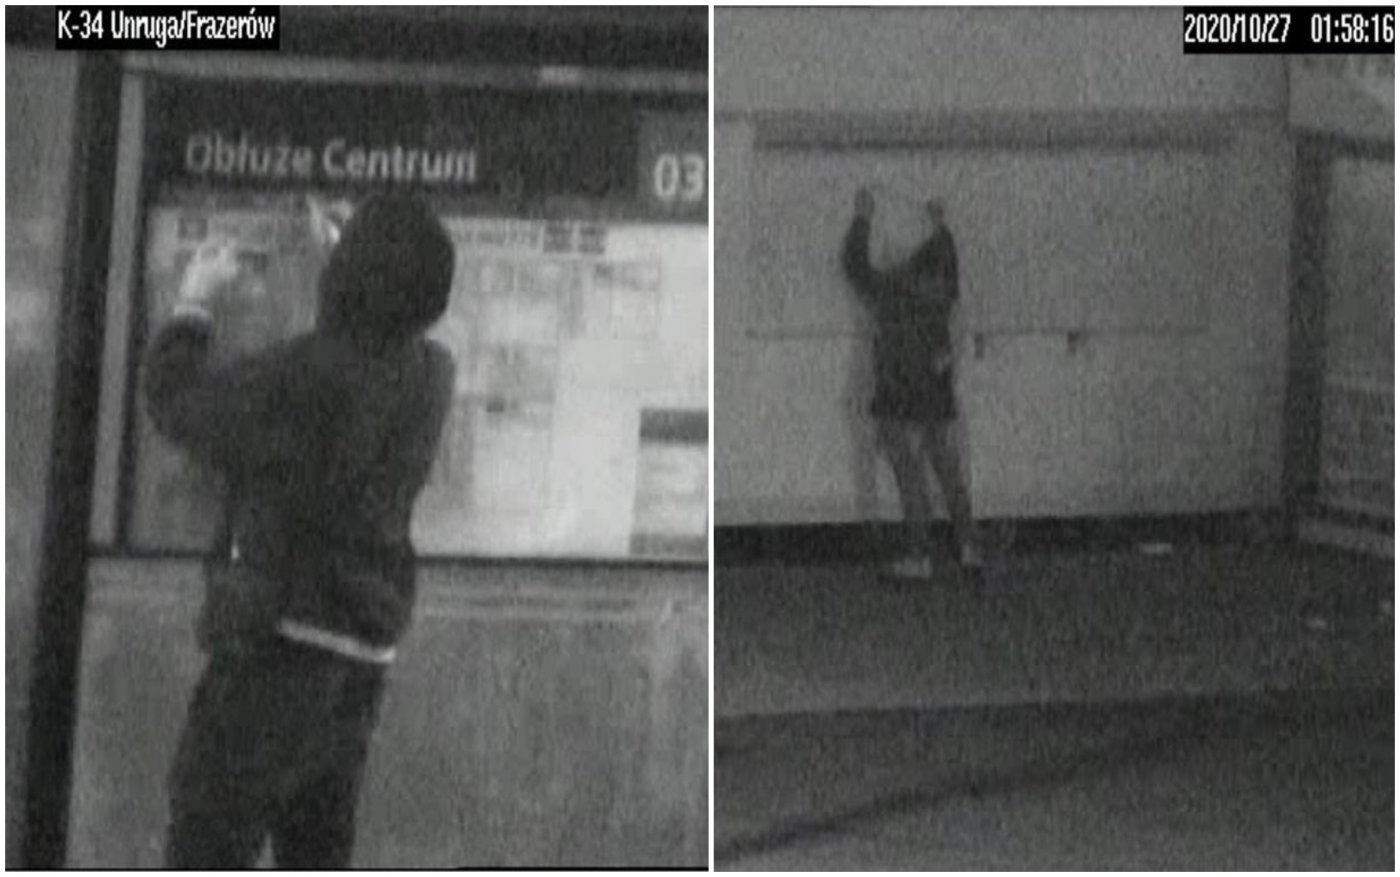 Dwa kadry z zapisu ulicznego monitoringu, widoczni mężczyźni piszący po przystanku autobusowym oraz ścianie budynku.